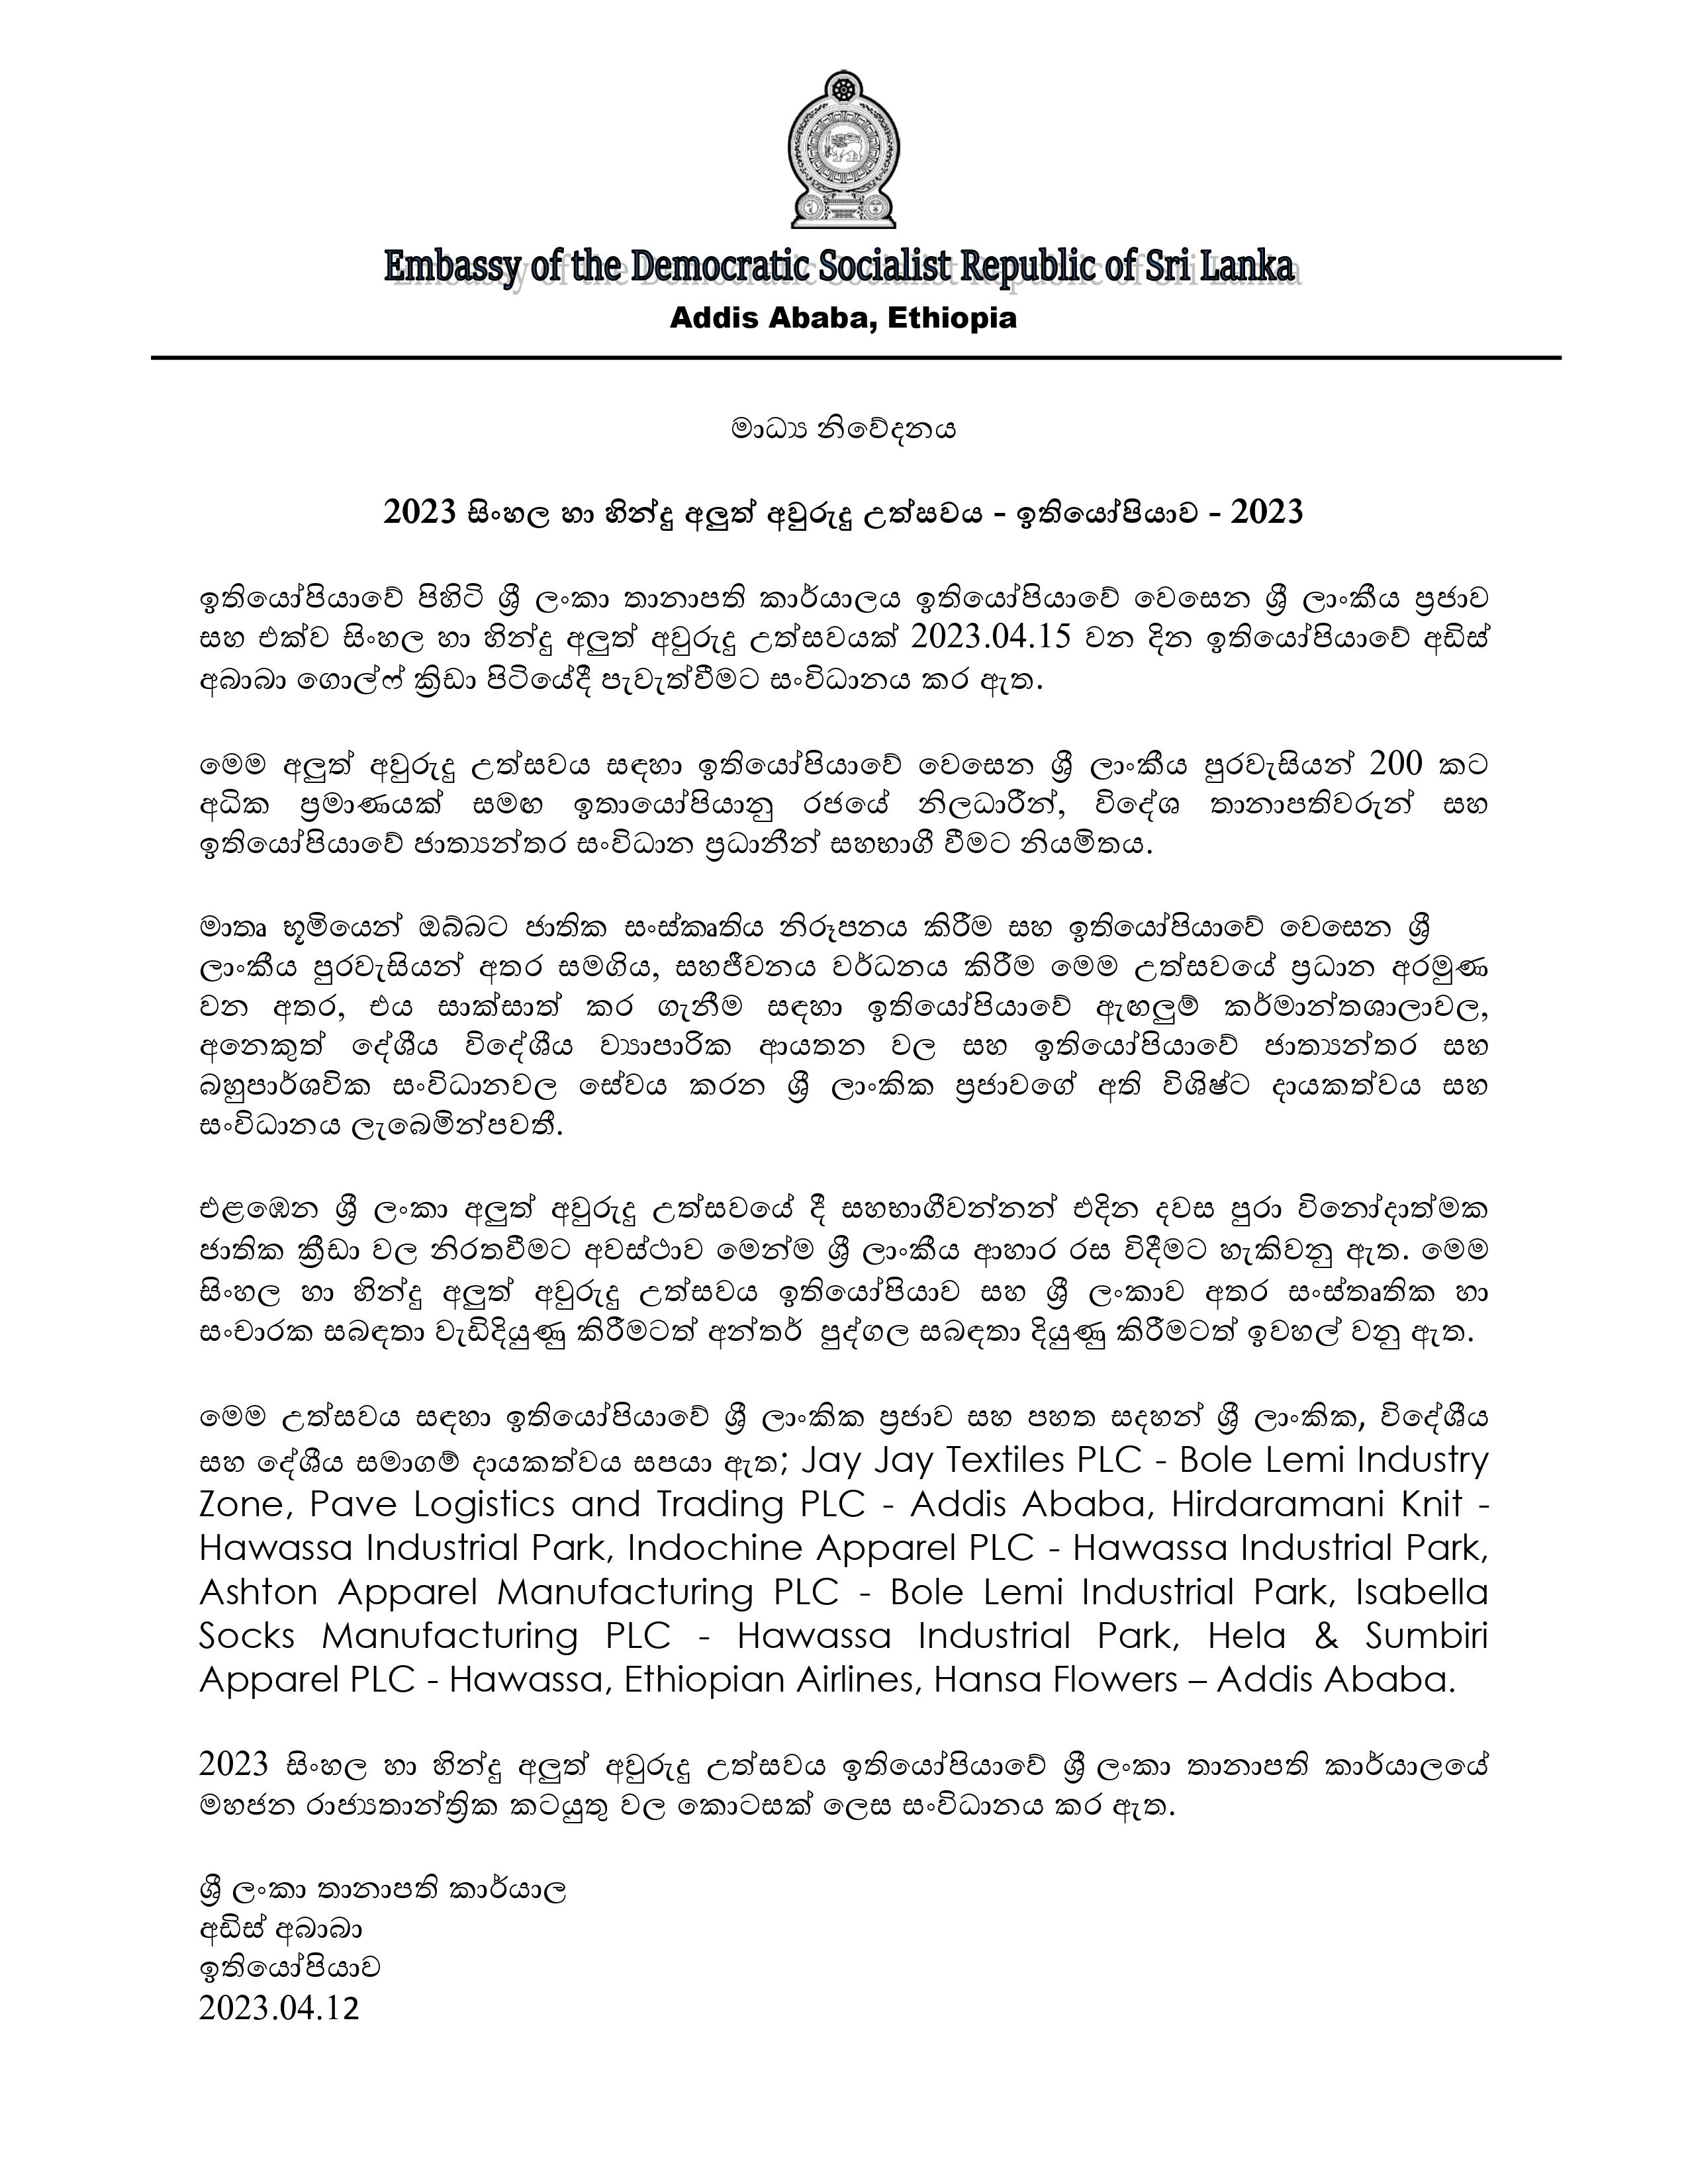 Press Release ශ් රී ලංකා අලුත් අවුරුදු උත්සවය ඉතියෝපියාව 2023 12.04.2023 Sinhala Text